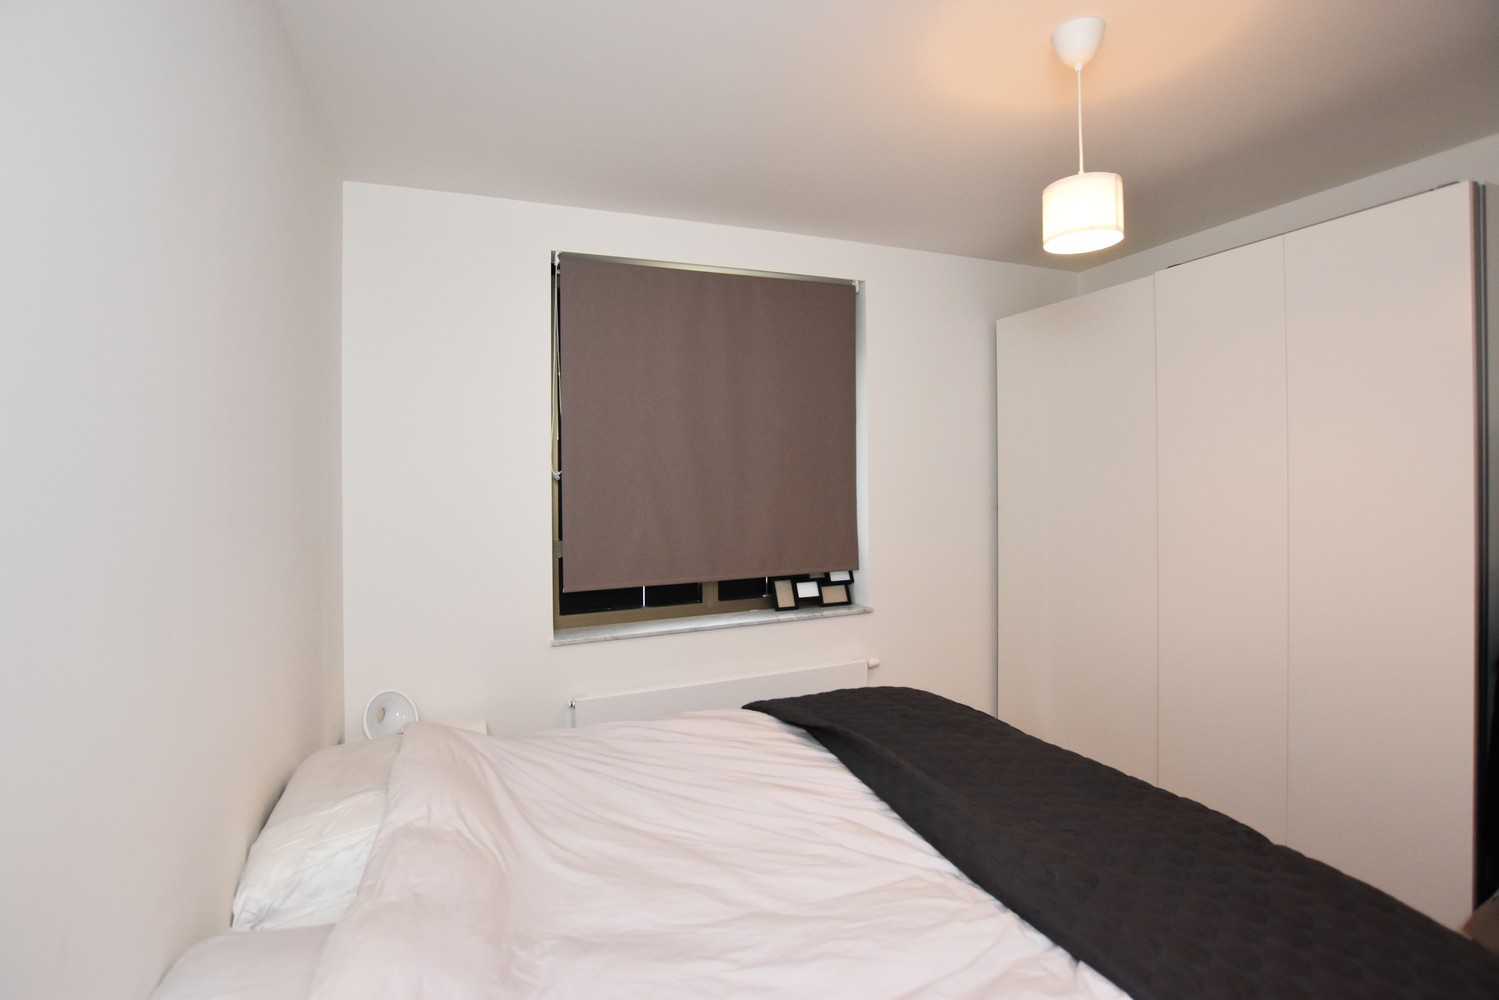 Zeer recent appartement met 2 slaapkamers en zonnig terras te Wommelgem! afbeelding 6